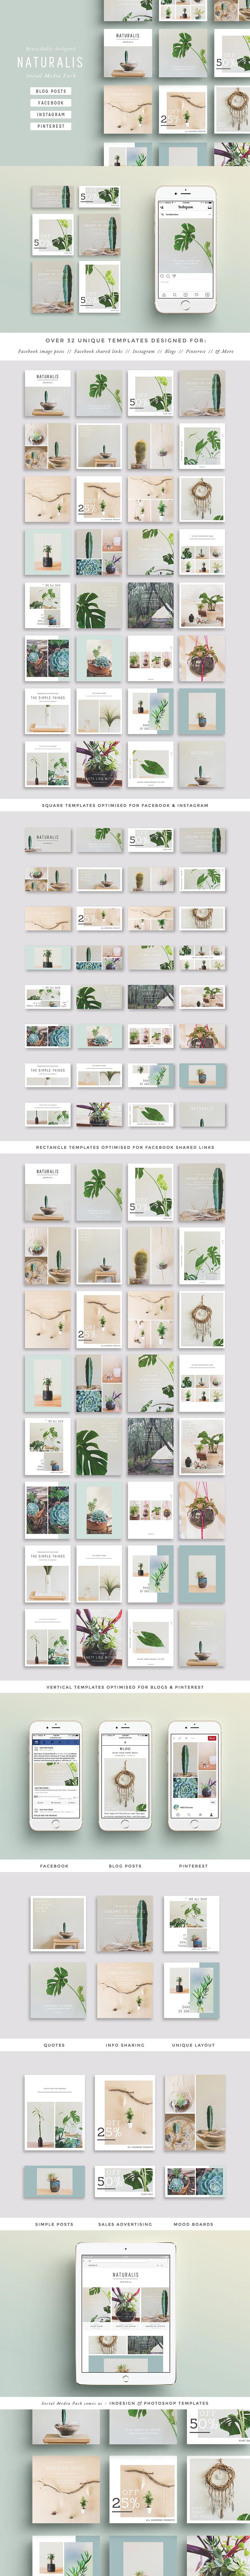 自然、绿色植物、环保居家感觉的广告图设计素材打包下载(PSD,1GB)